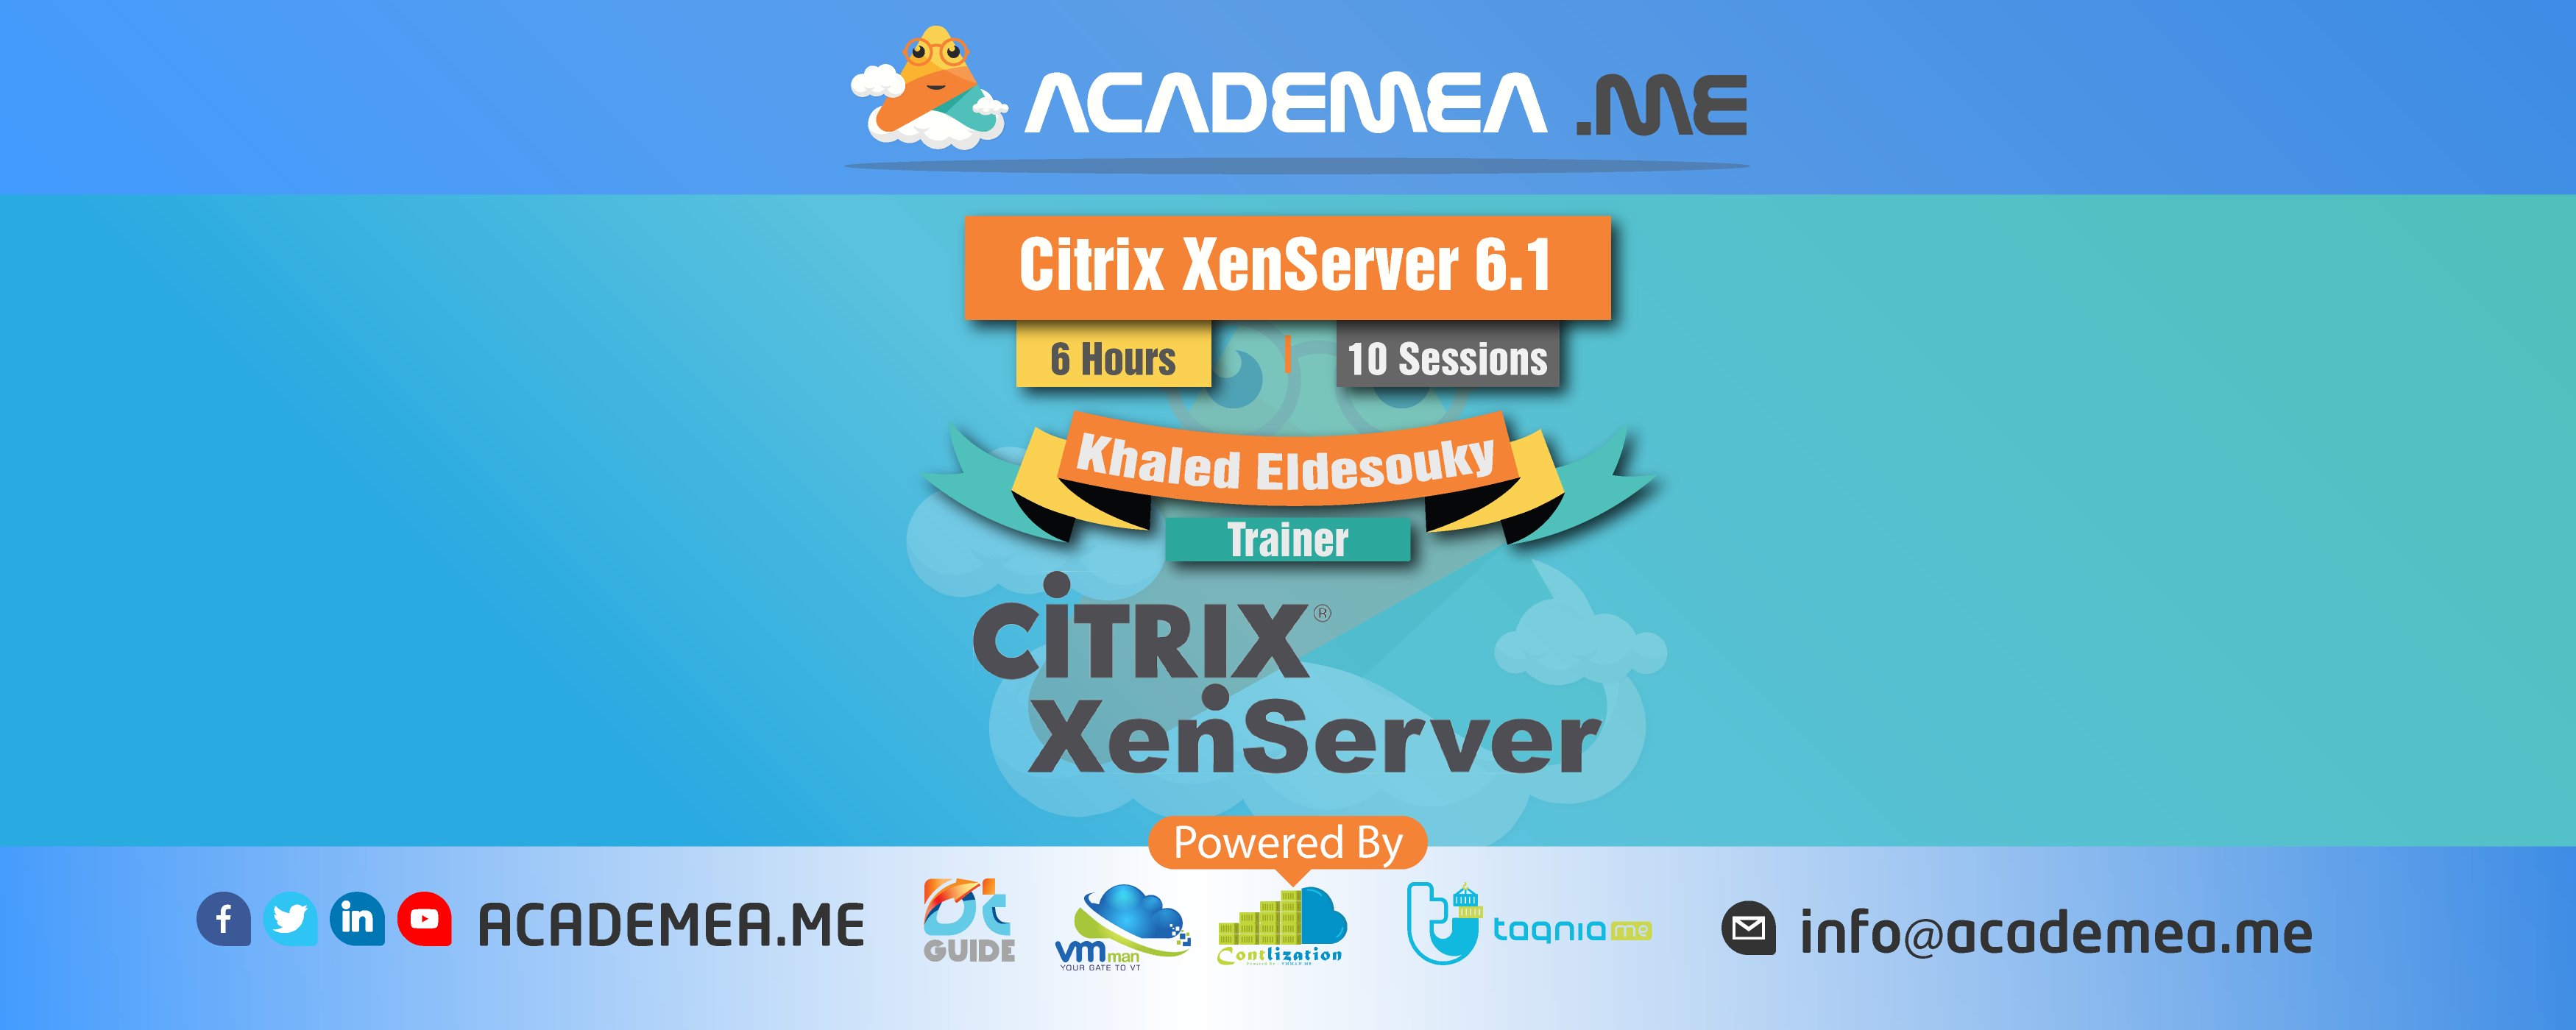 Citrix XenServer 6.1